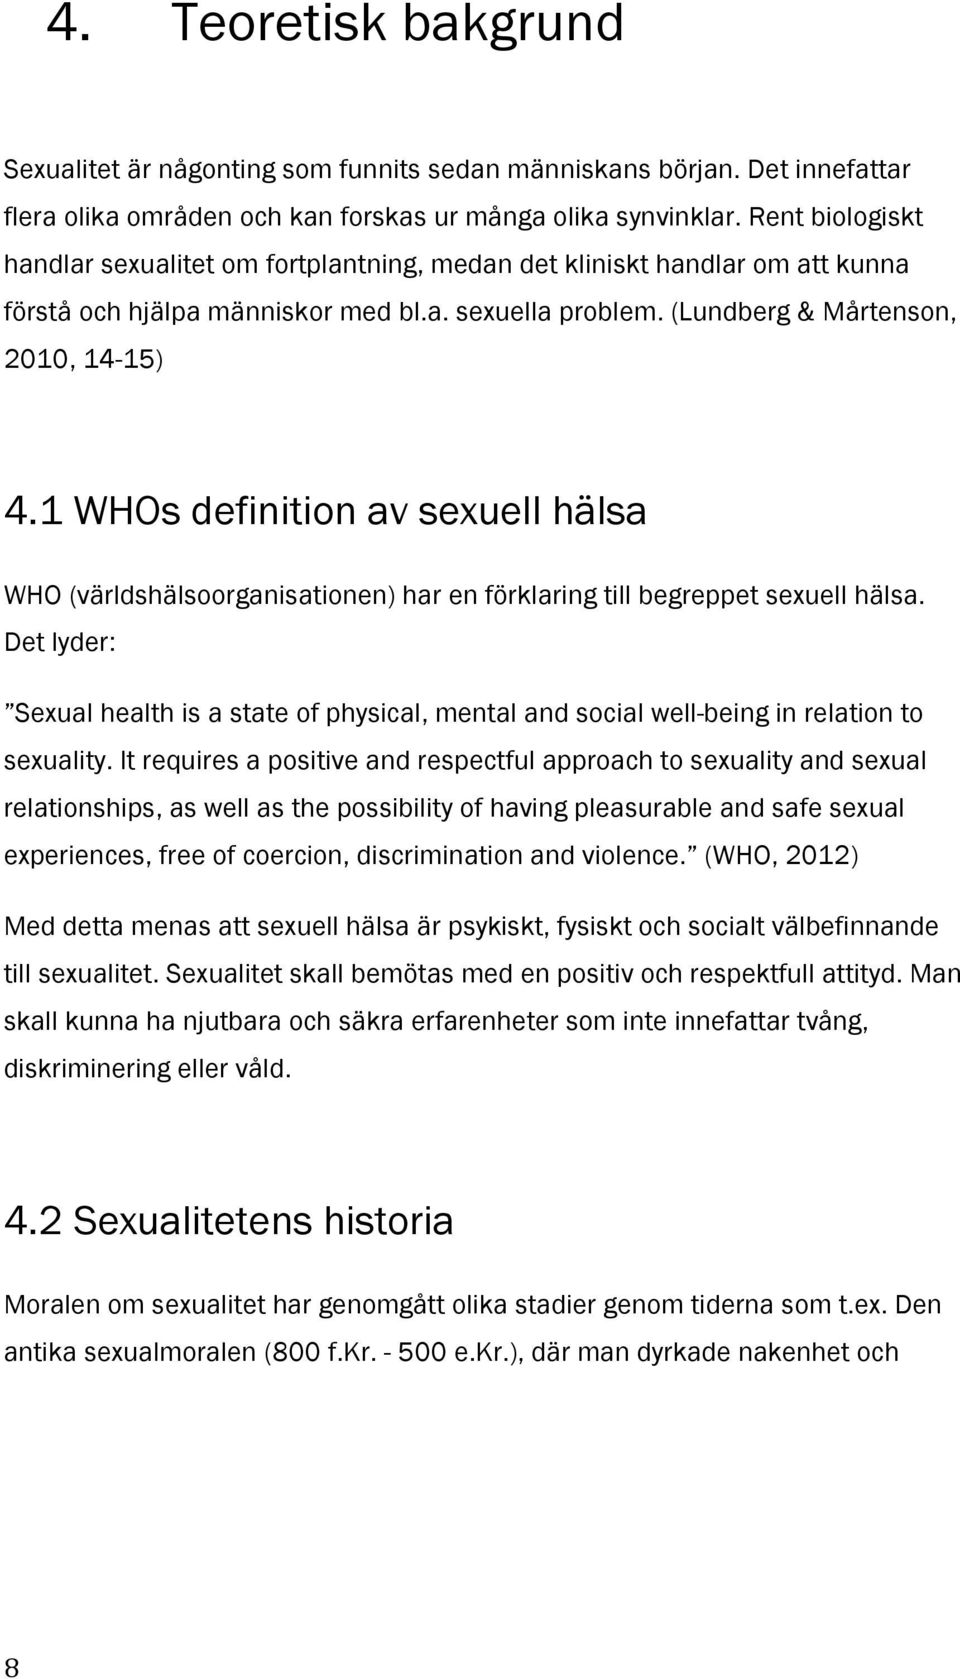 1 WHOs definition av sexuell hälsa WHO (världshälsoorganisationen) har en förklaring till begreppet sexuell hälsa.